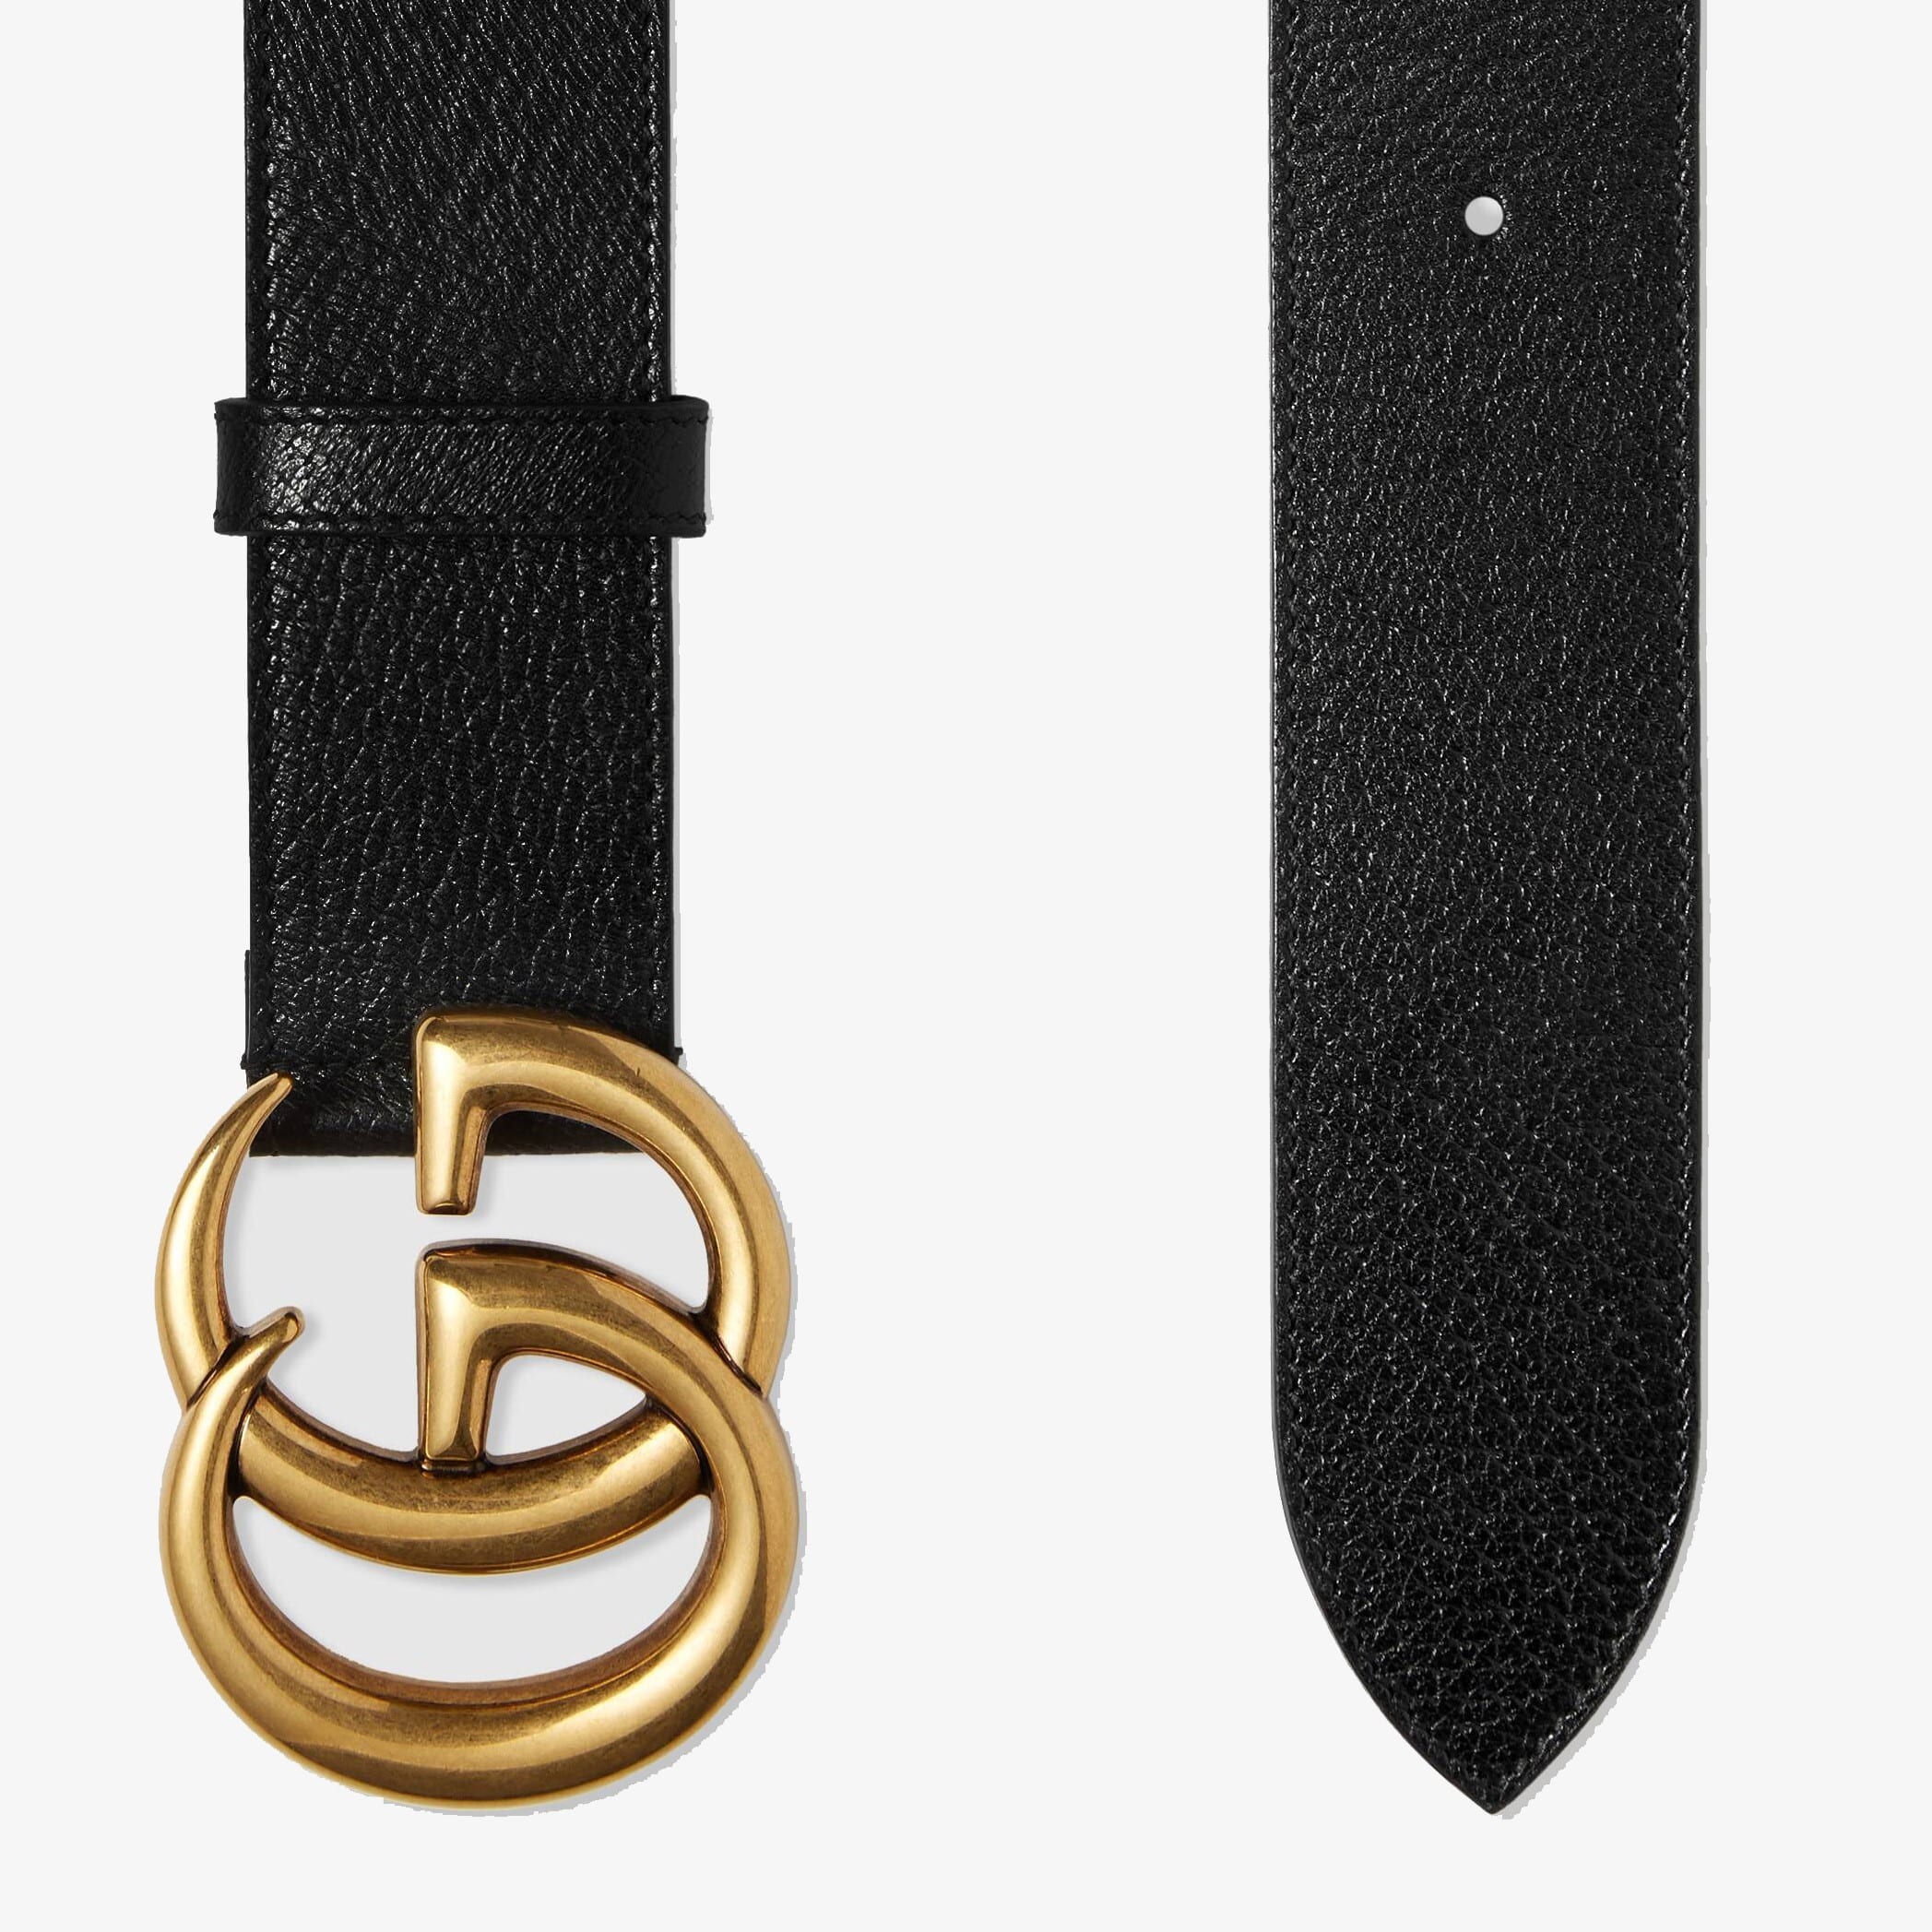 Kering giữ nguyên giá trị của chiếc thắt lưng Gucci nguyên bản